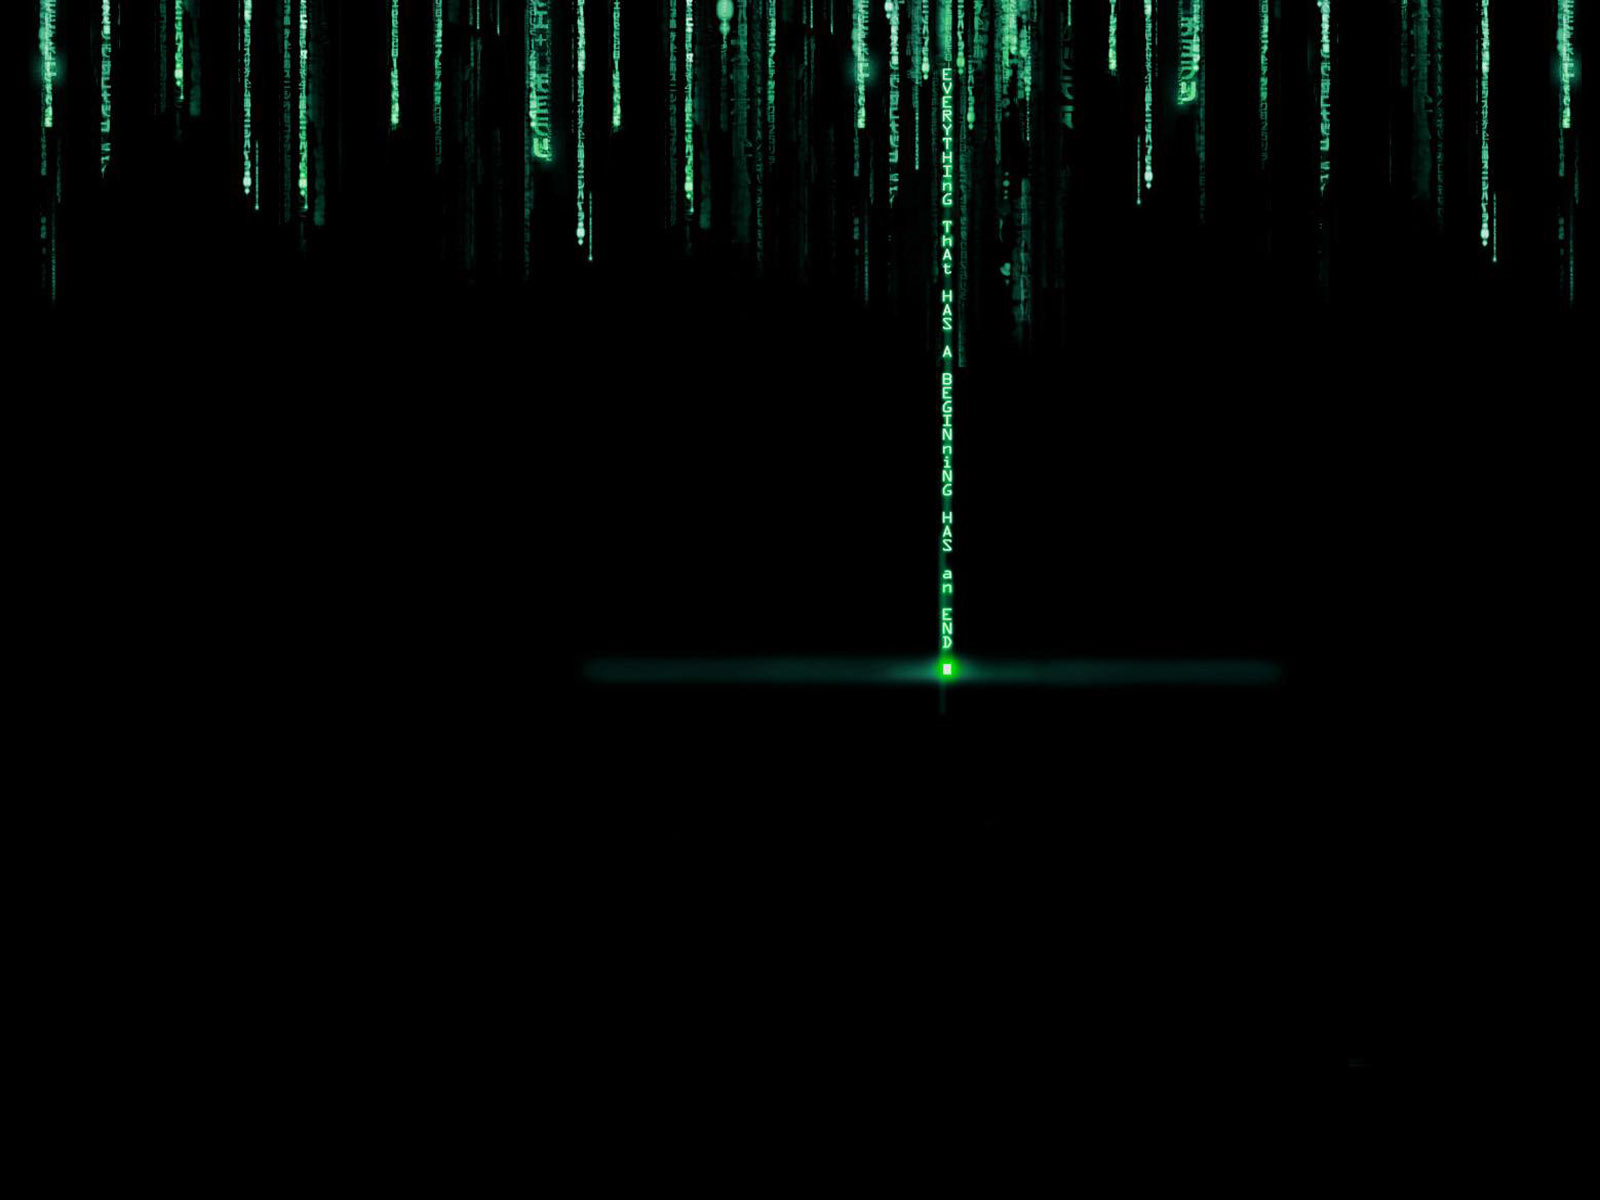 The Matrix Revolutions Desktop Wallpaper For HD Widescreen